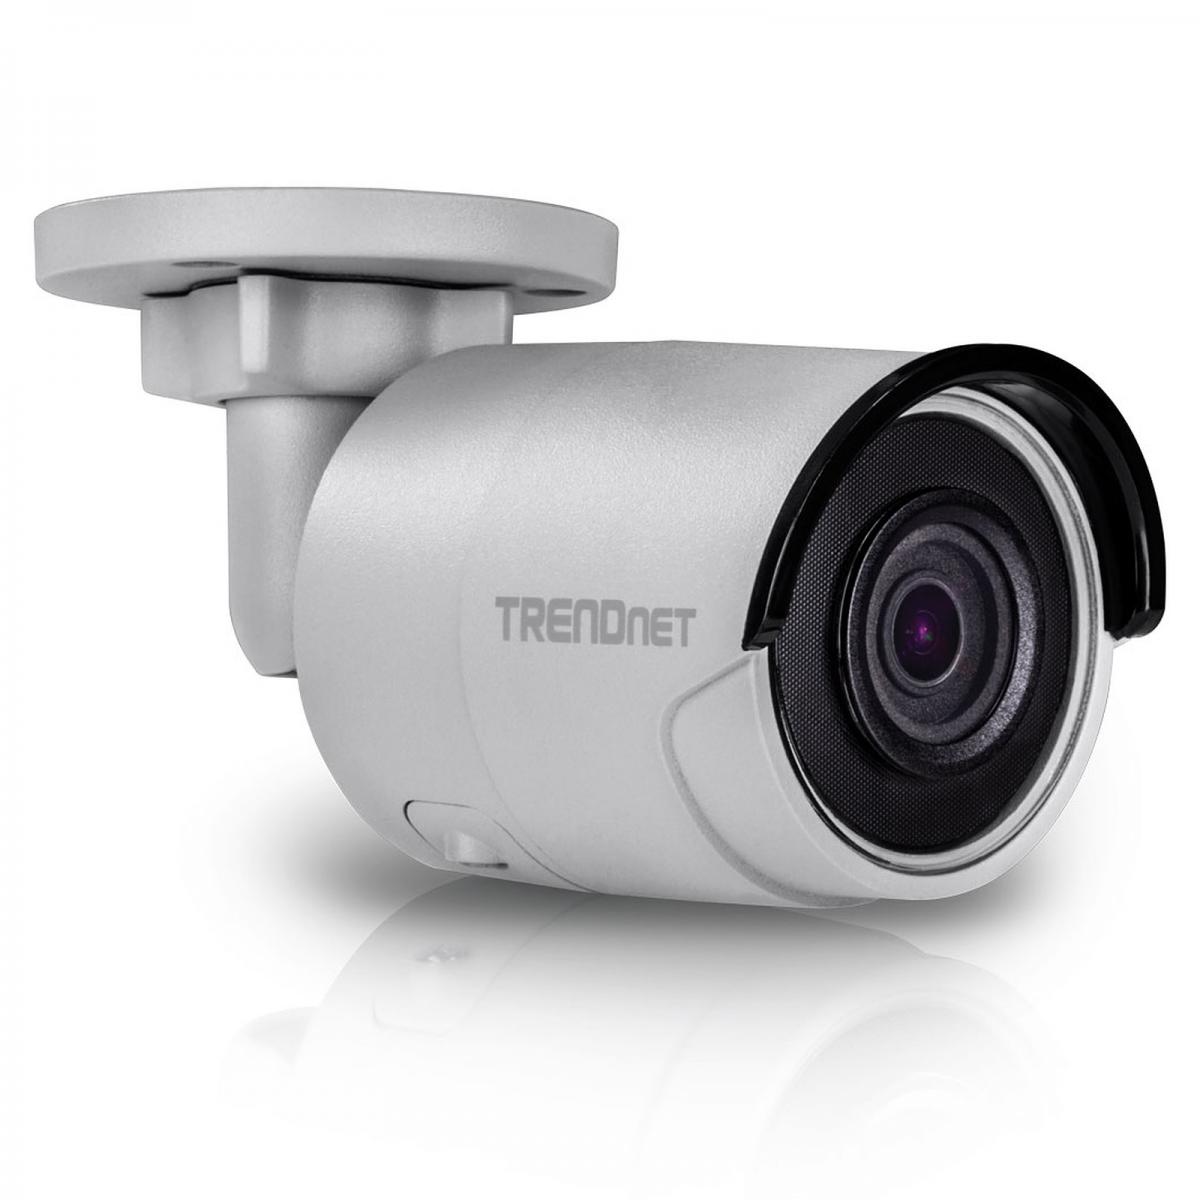 Trendnet - TRENDNET TV-IP1314PI - Caméra de surveillance connectée